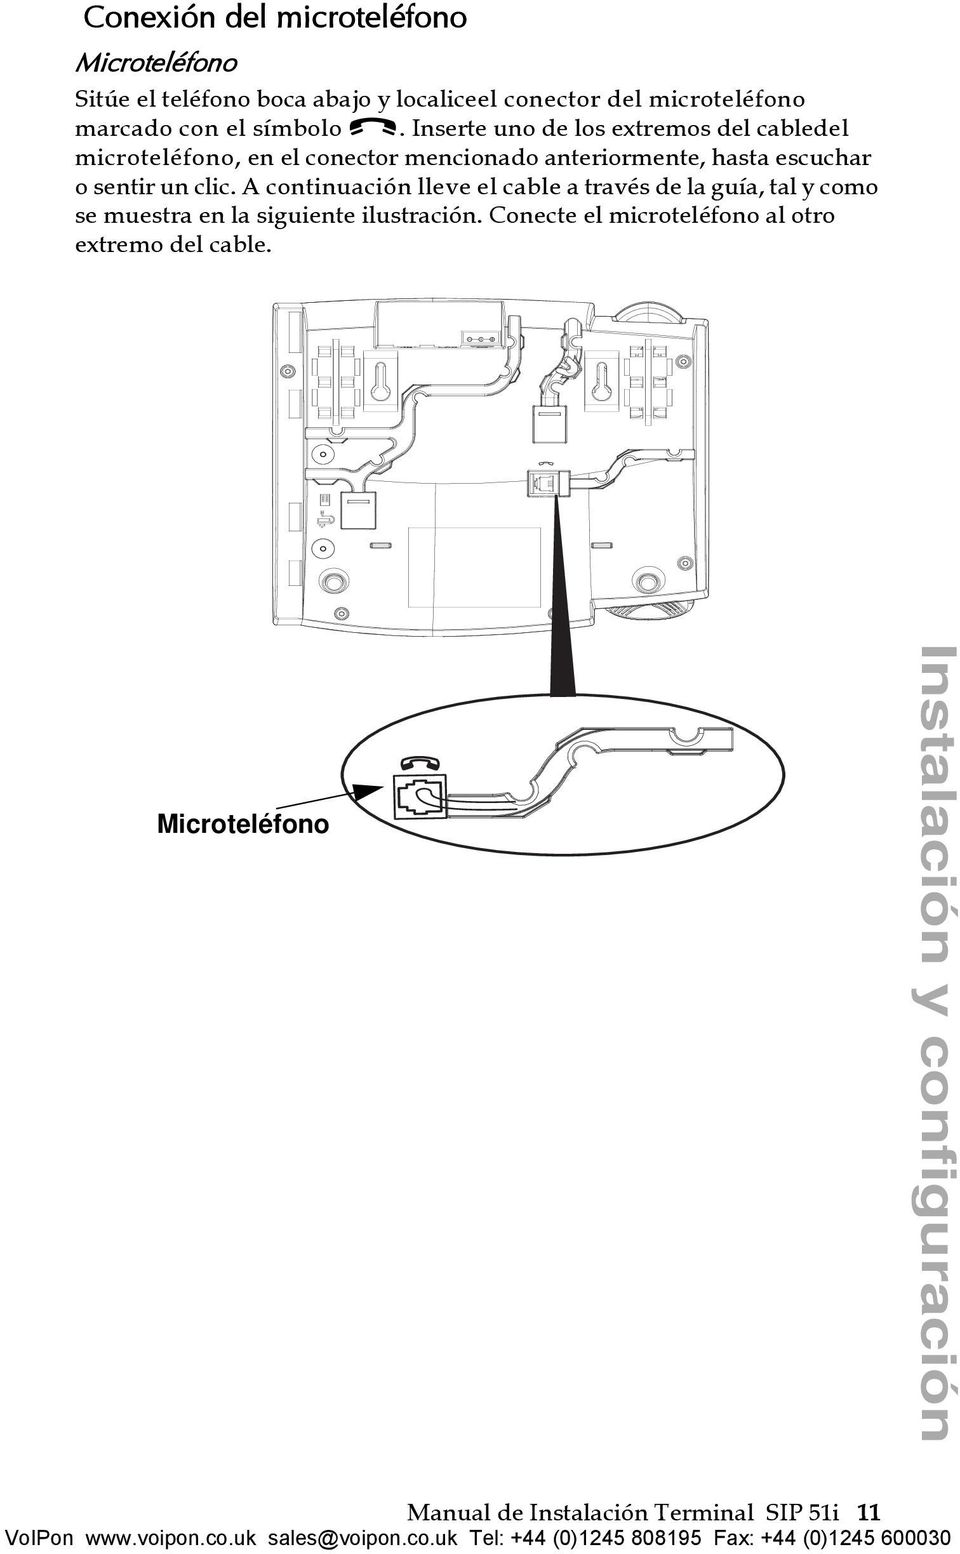 Inserte uno de los extremos del cabledel microteléfono, en el conector mencionado anteriormente, hasta escuchar o sentir un